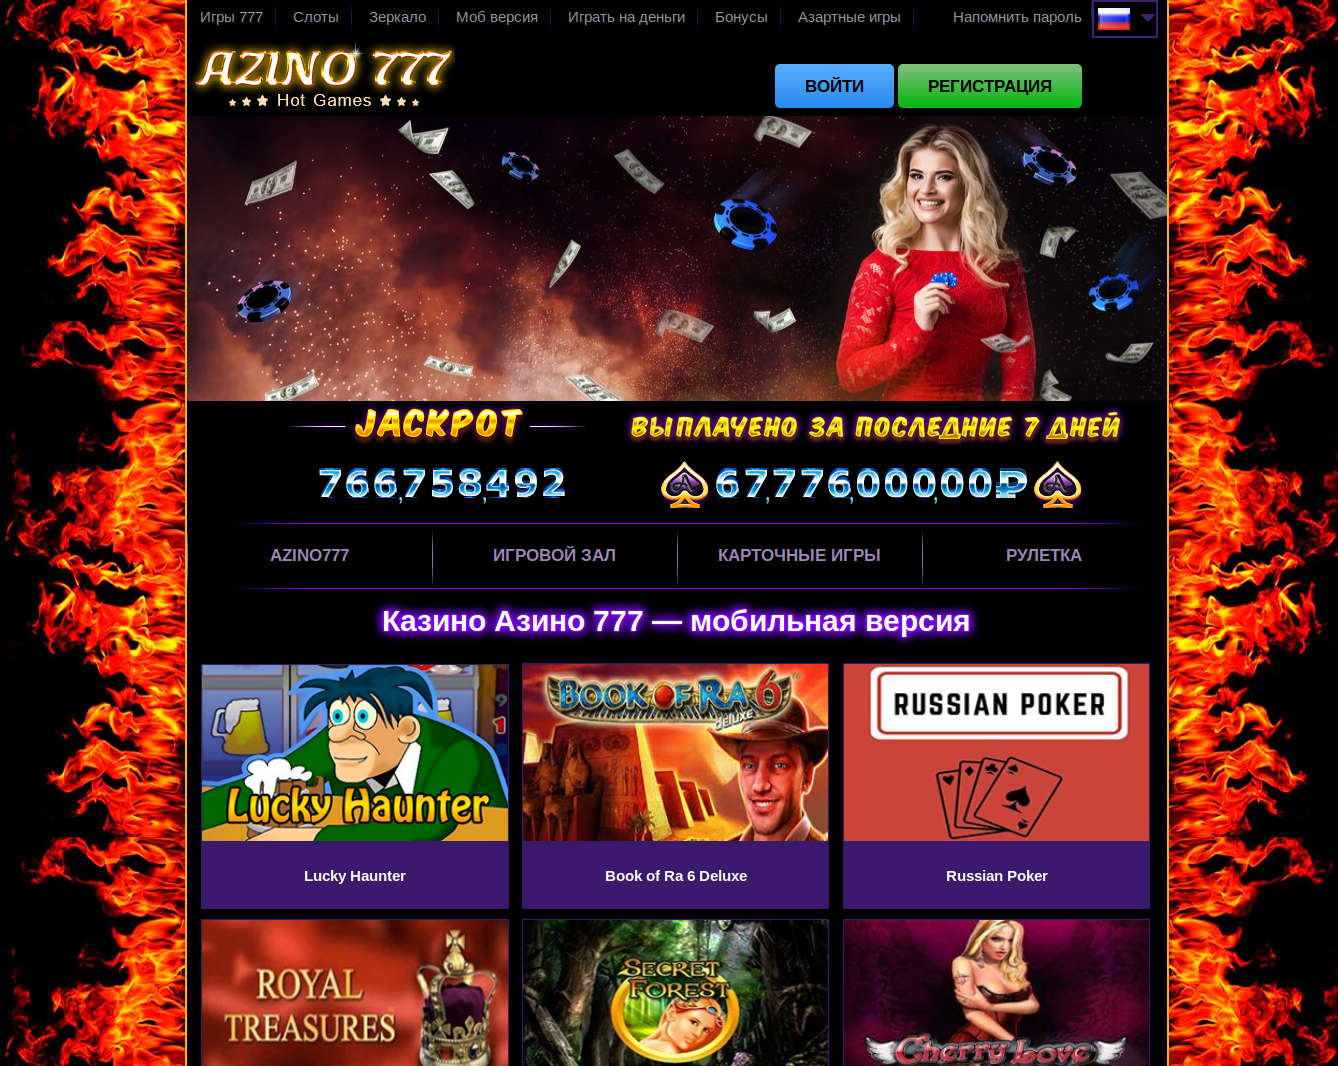 Откройте двери казино azino777 на официальном сайте для увлекательной игры и получайте прибыль